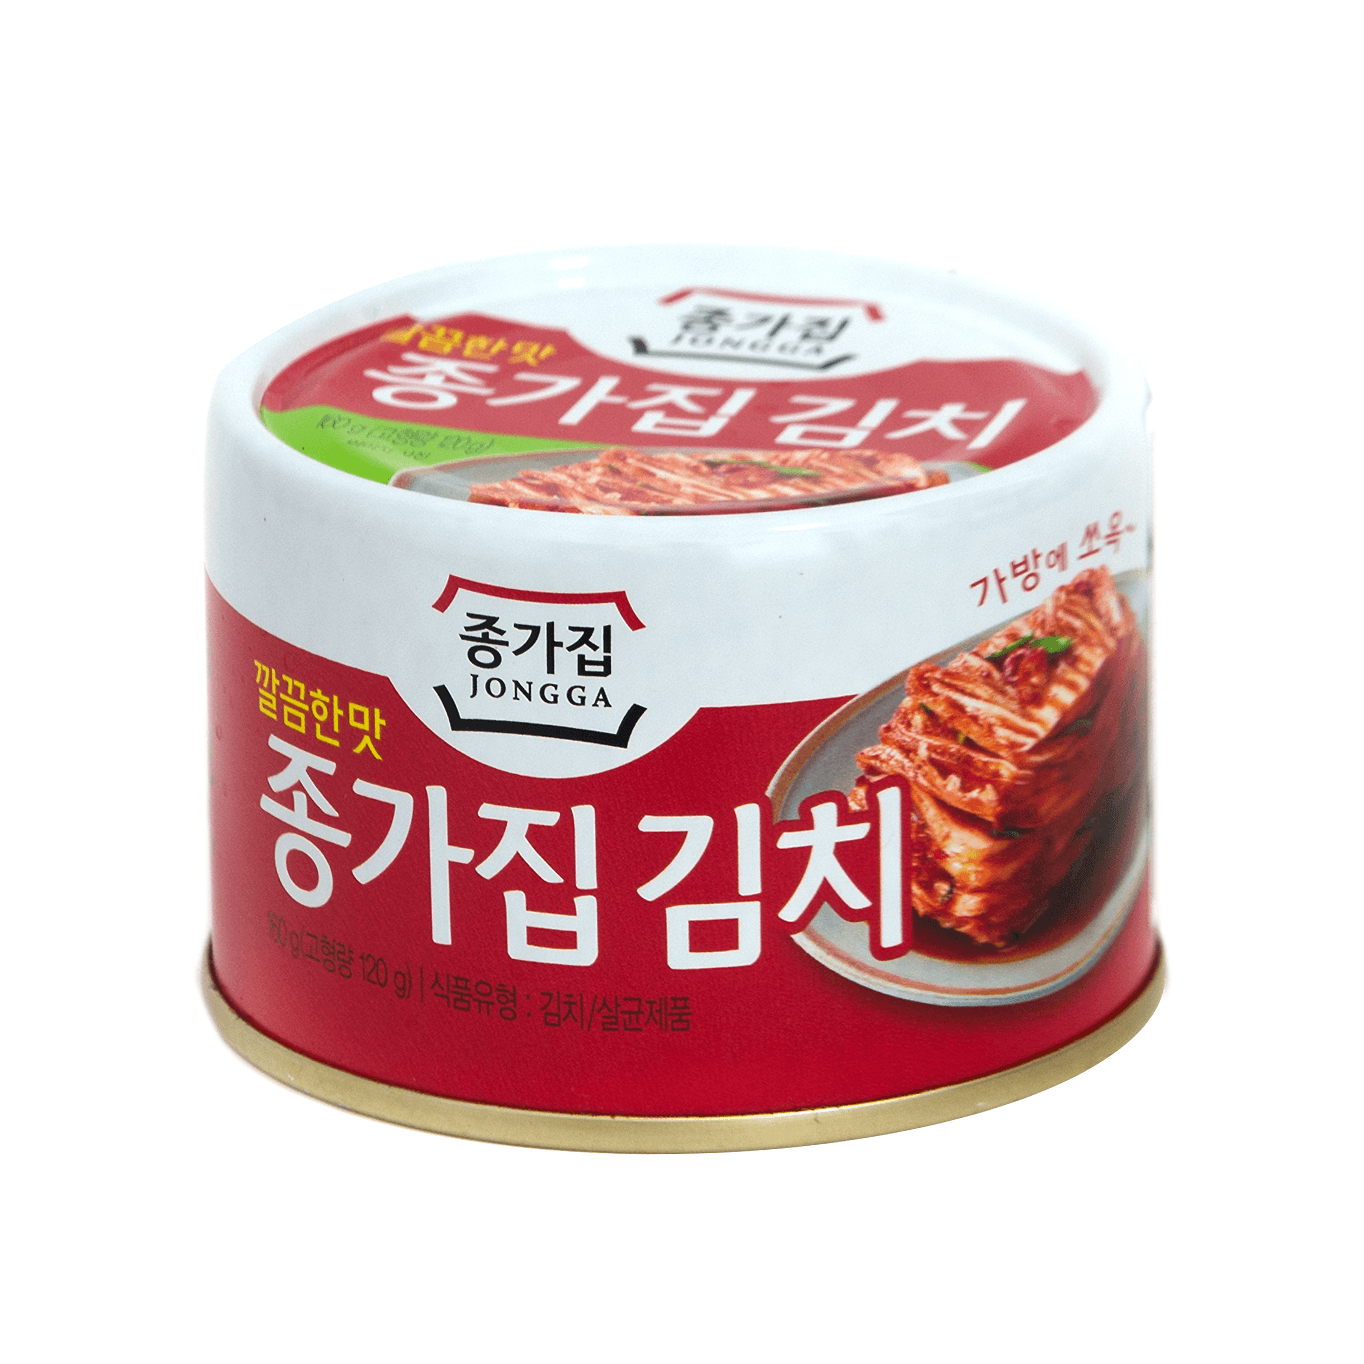 Exclusiv in magazine - Kimchi Jongga 160g, asianfood.ro